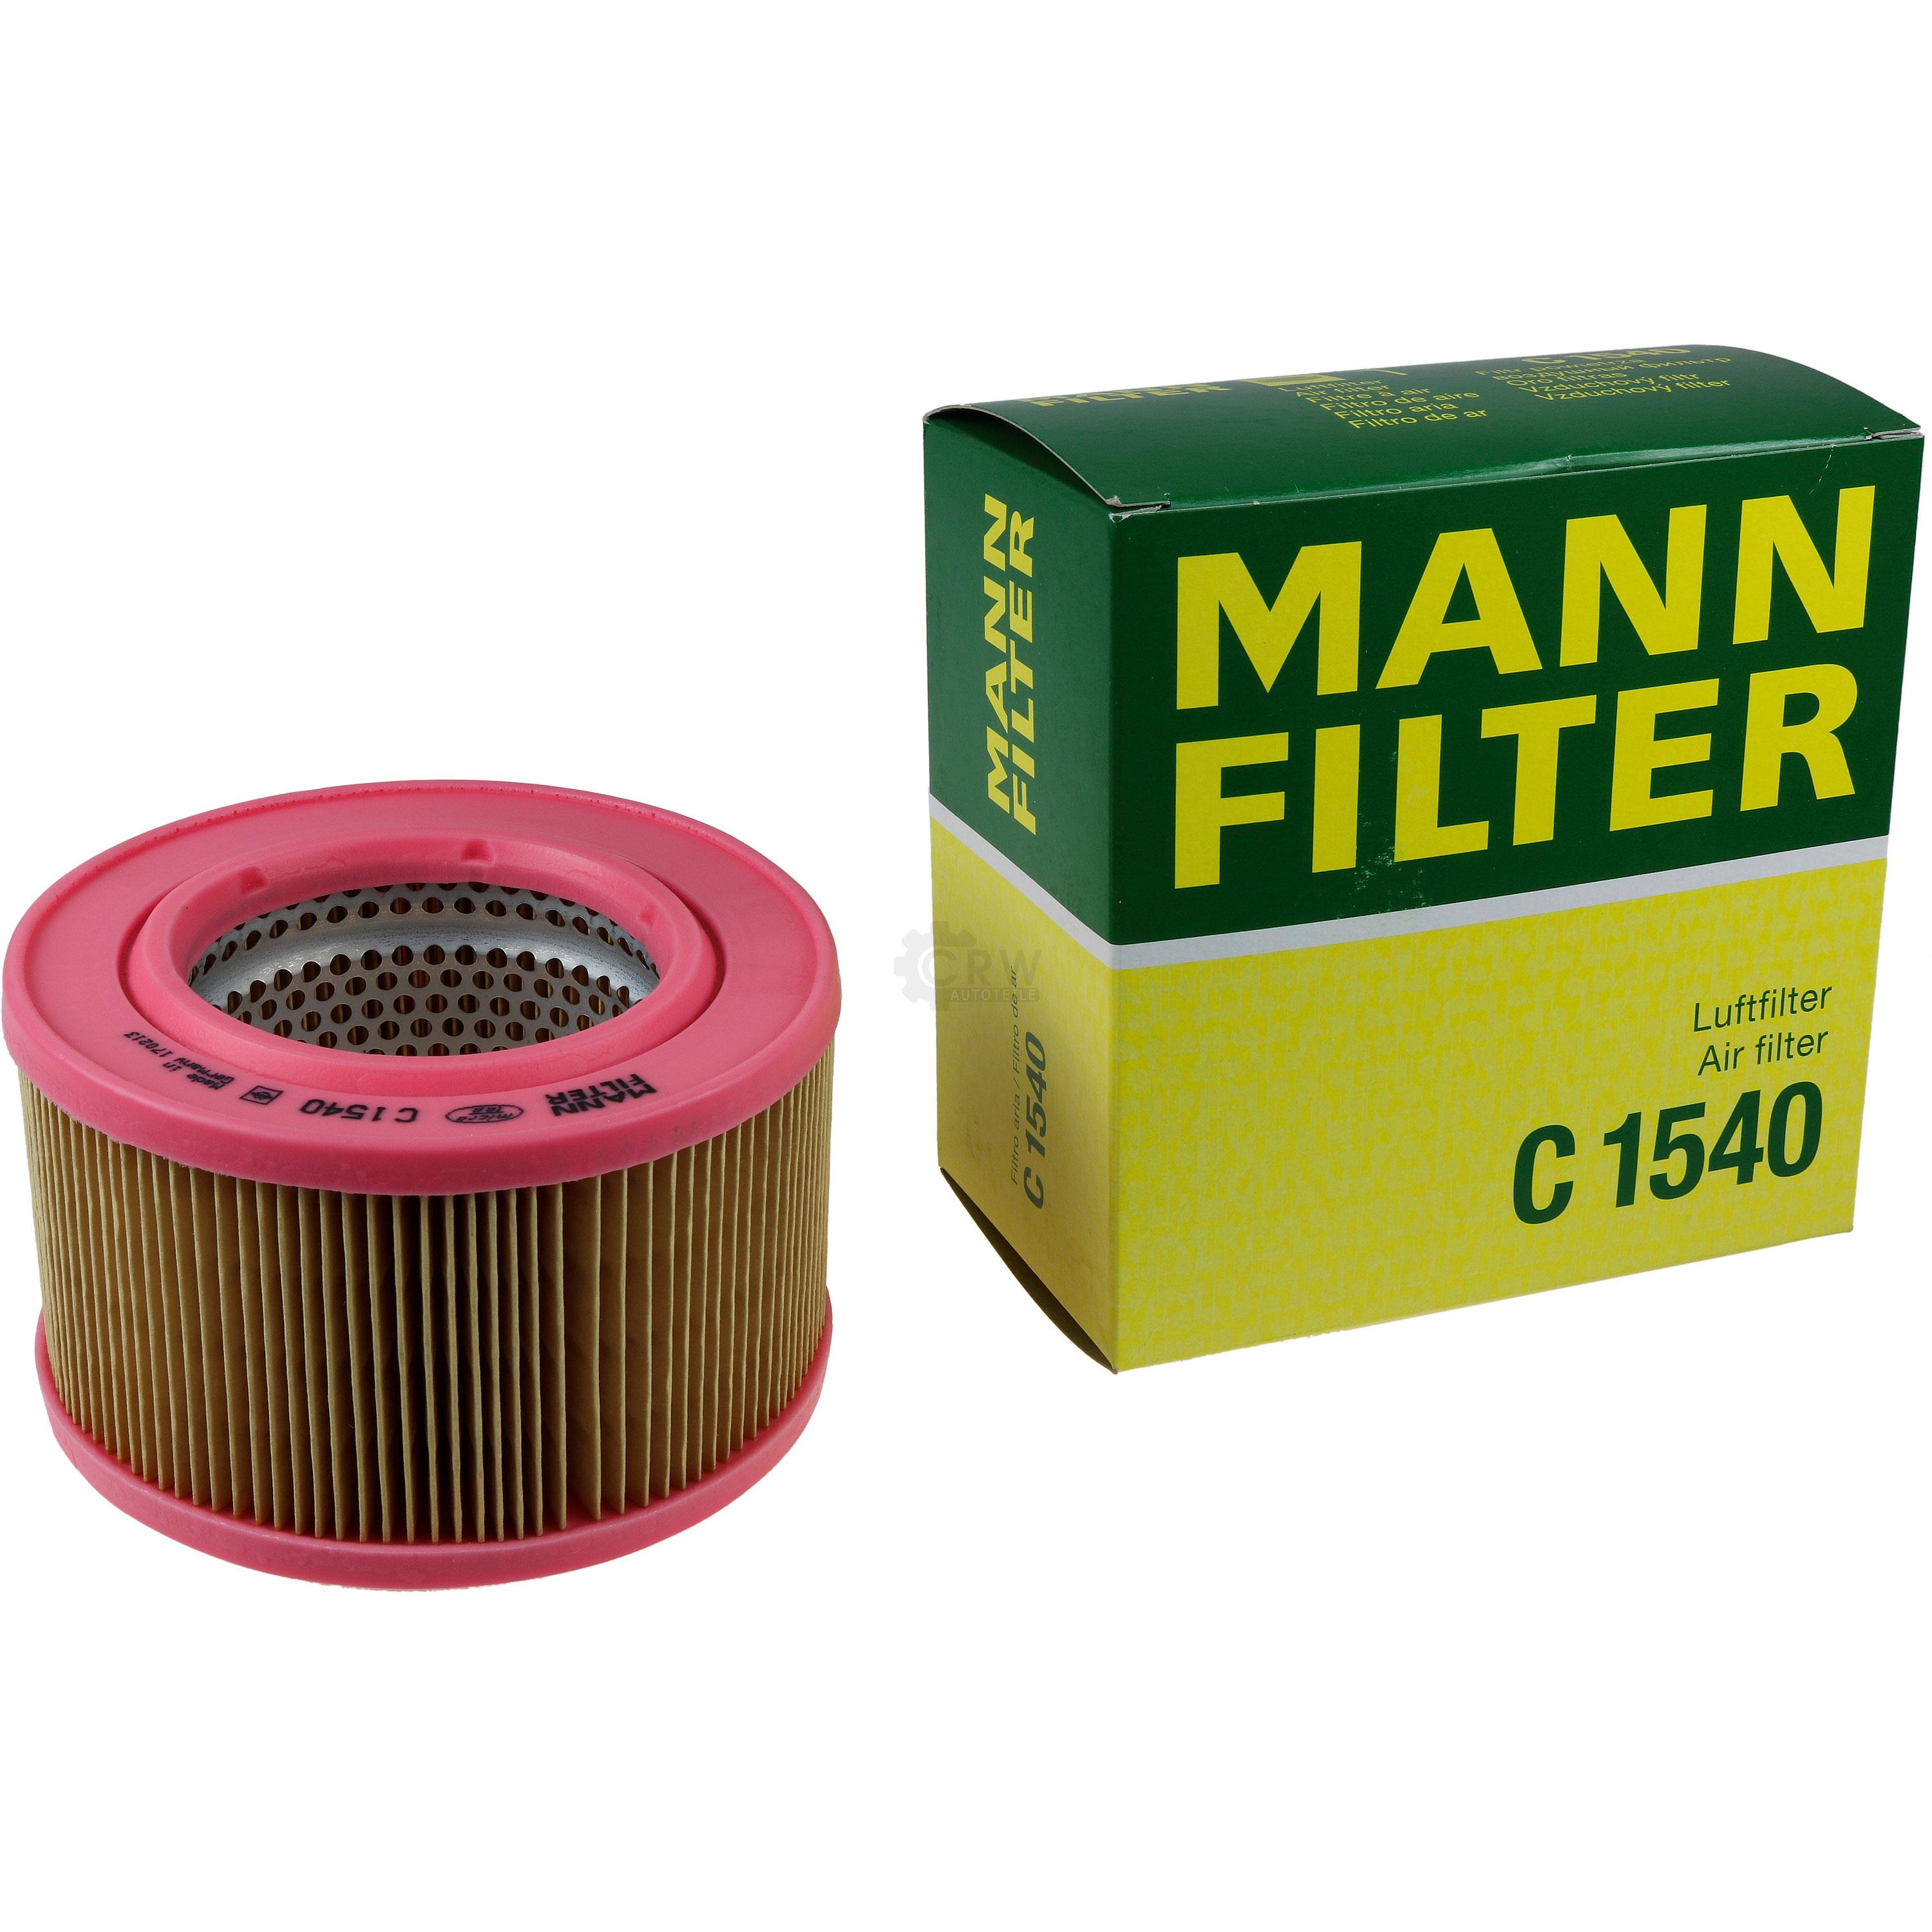 MANN-FILTER Luftfilter C 1540